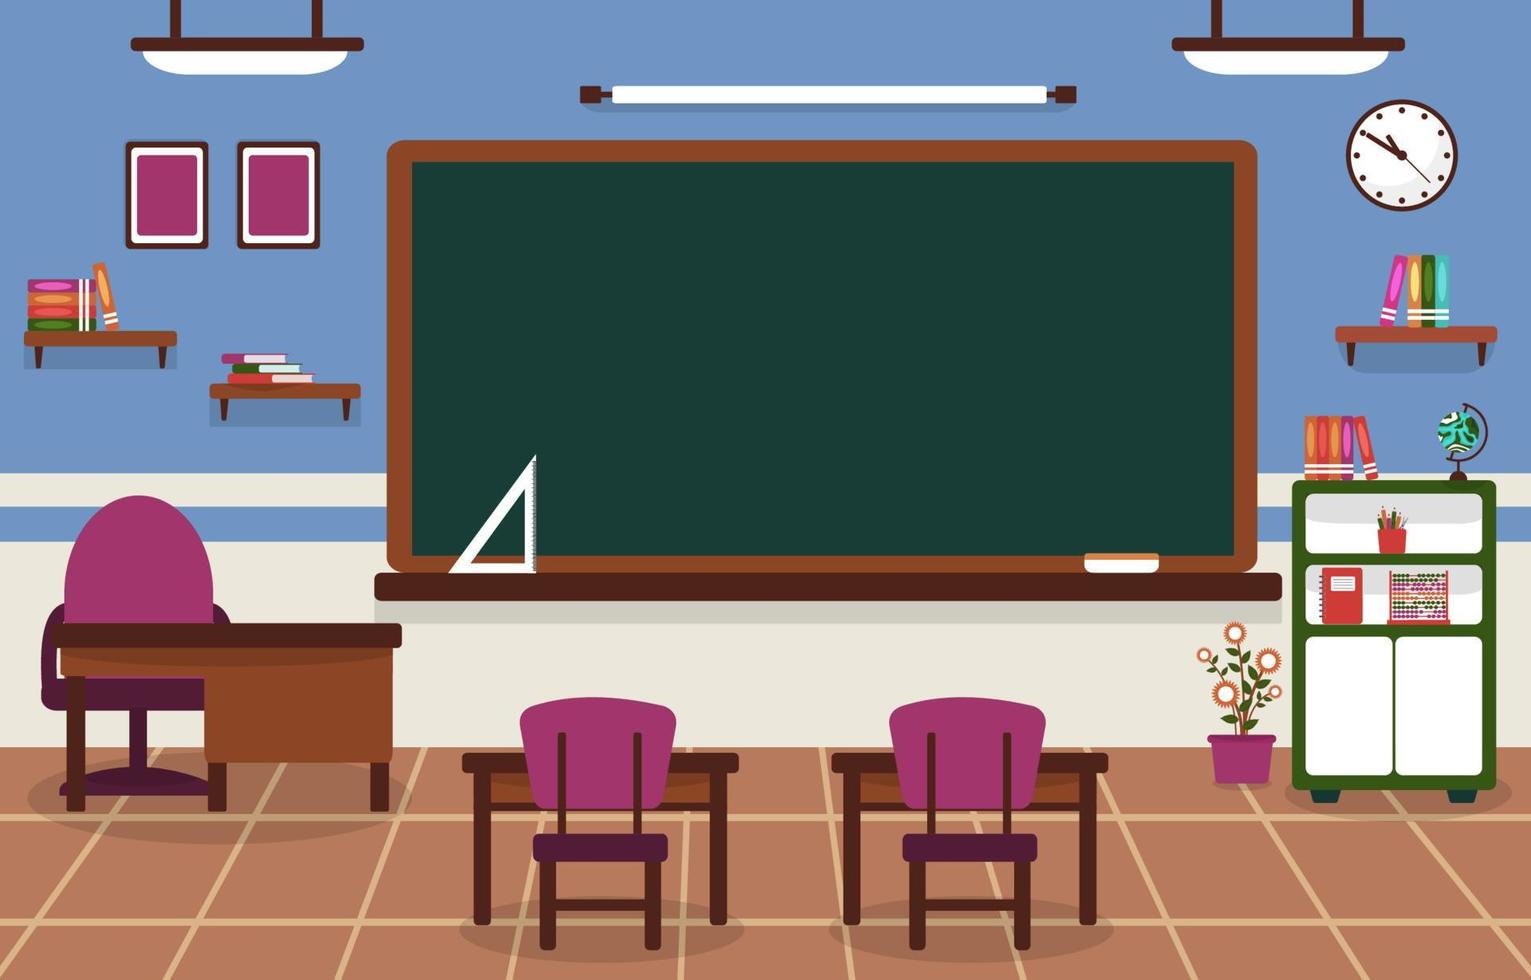 klass skola ingen klassrummet svart tavla bordsstol utbildning illustration vektor